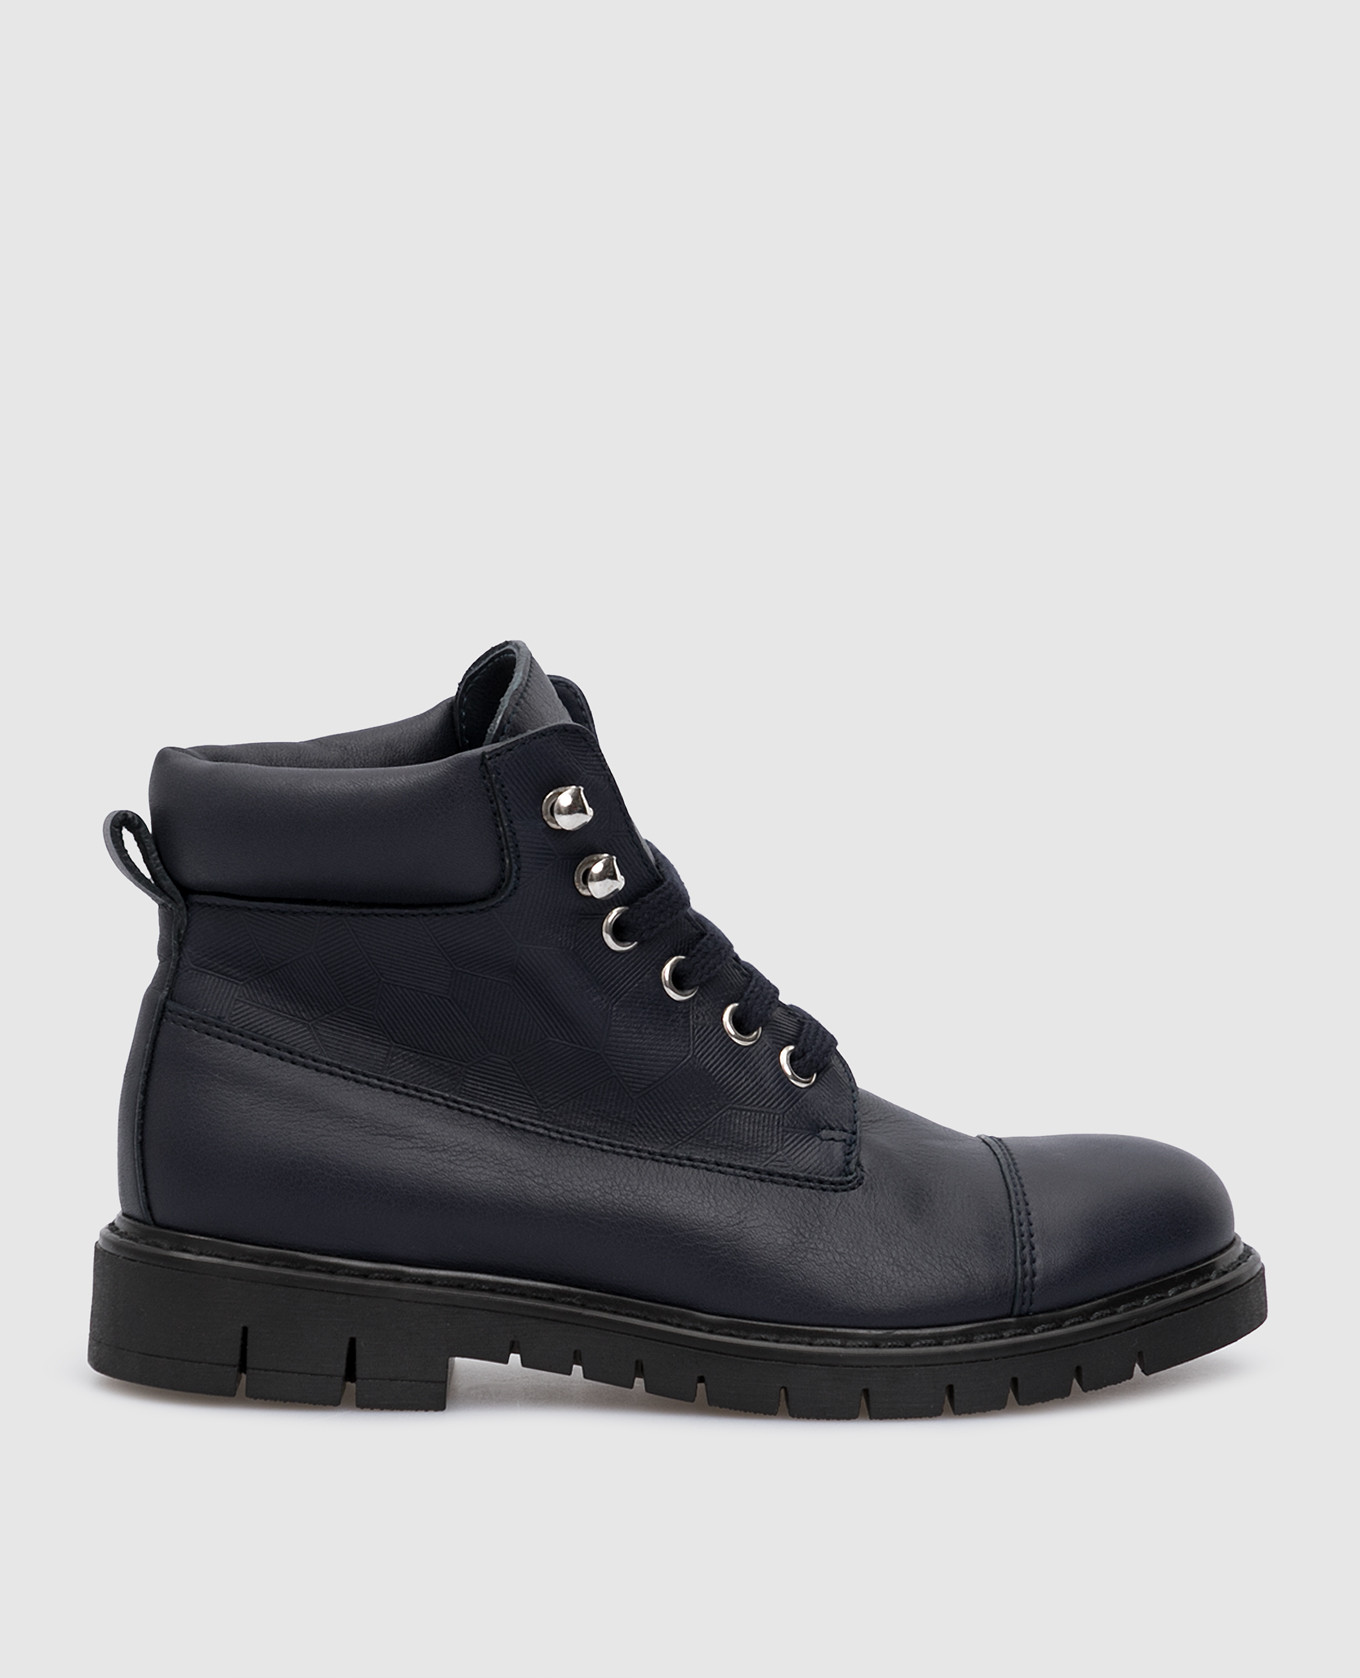 Children's dark blue leather boots